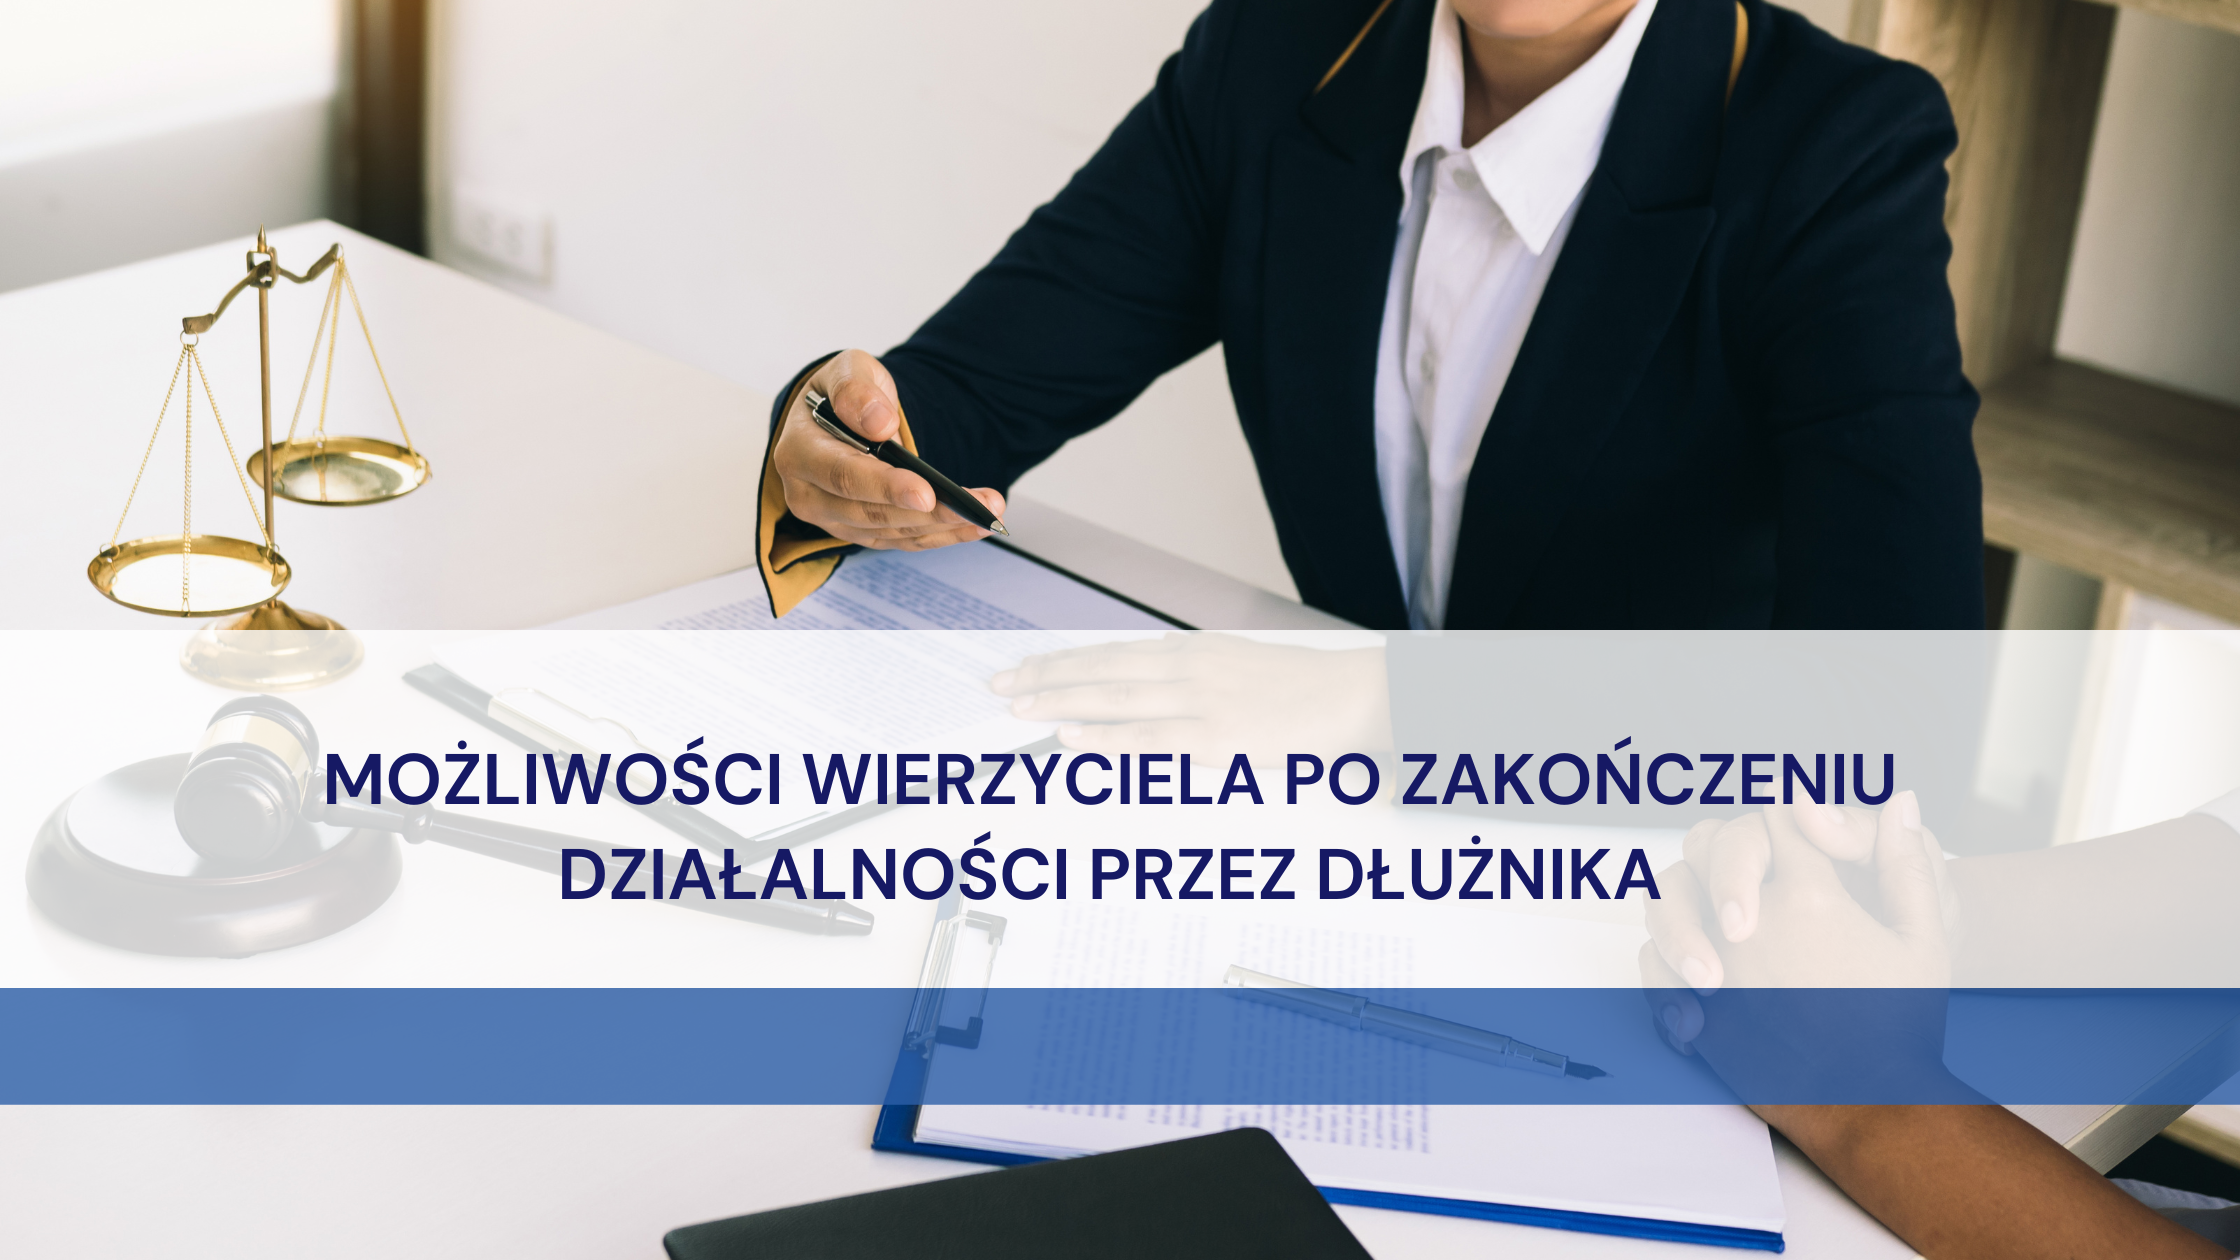 (Polski) Możliwości wierzyciela po zakończeniu działalności przez dłużnika